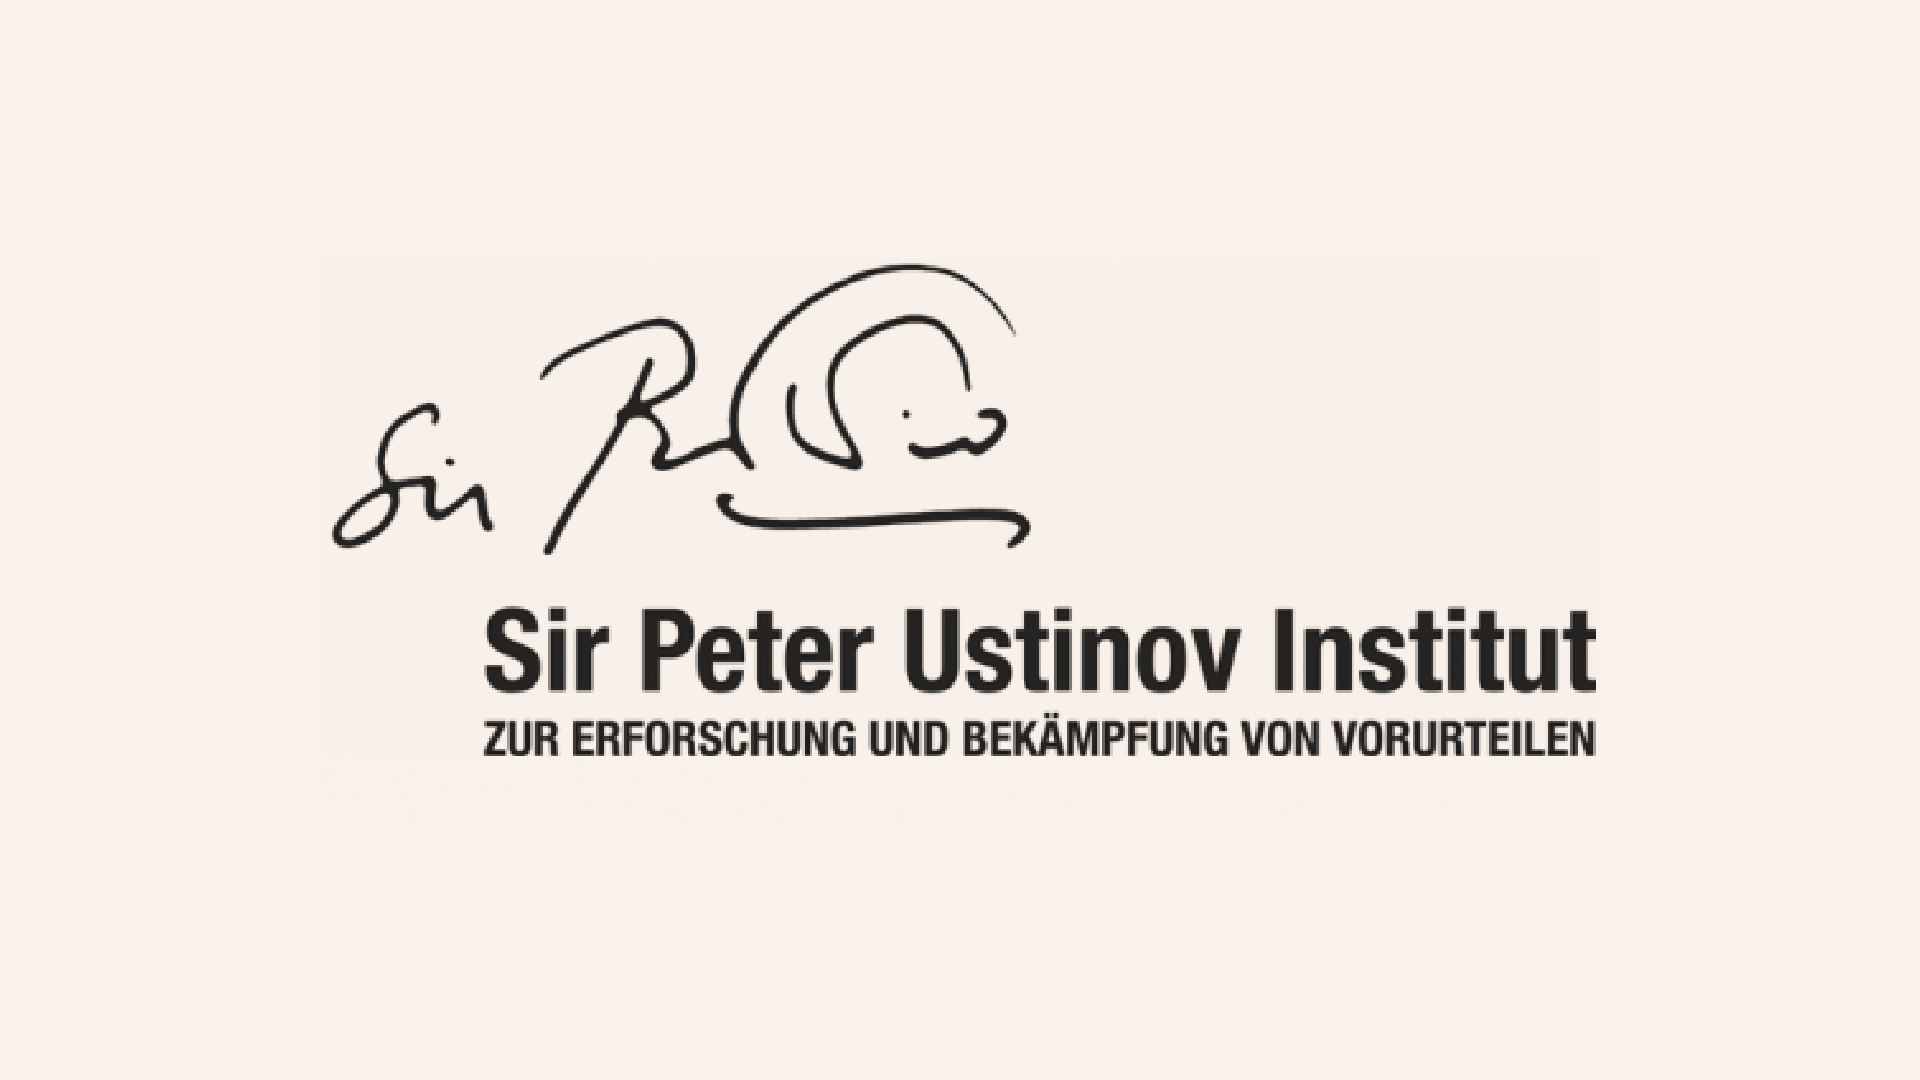 Sir Peter Ustinov Institute